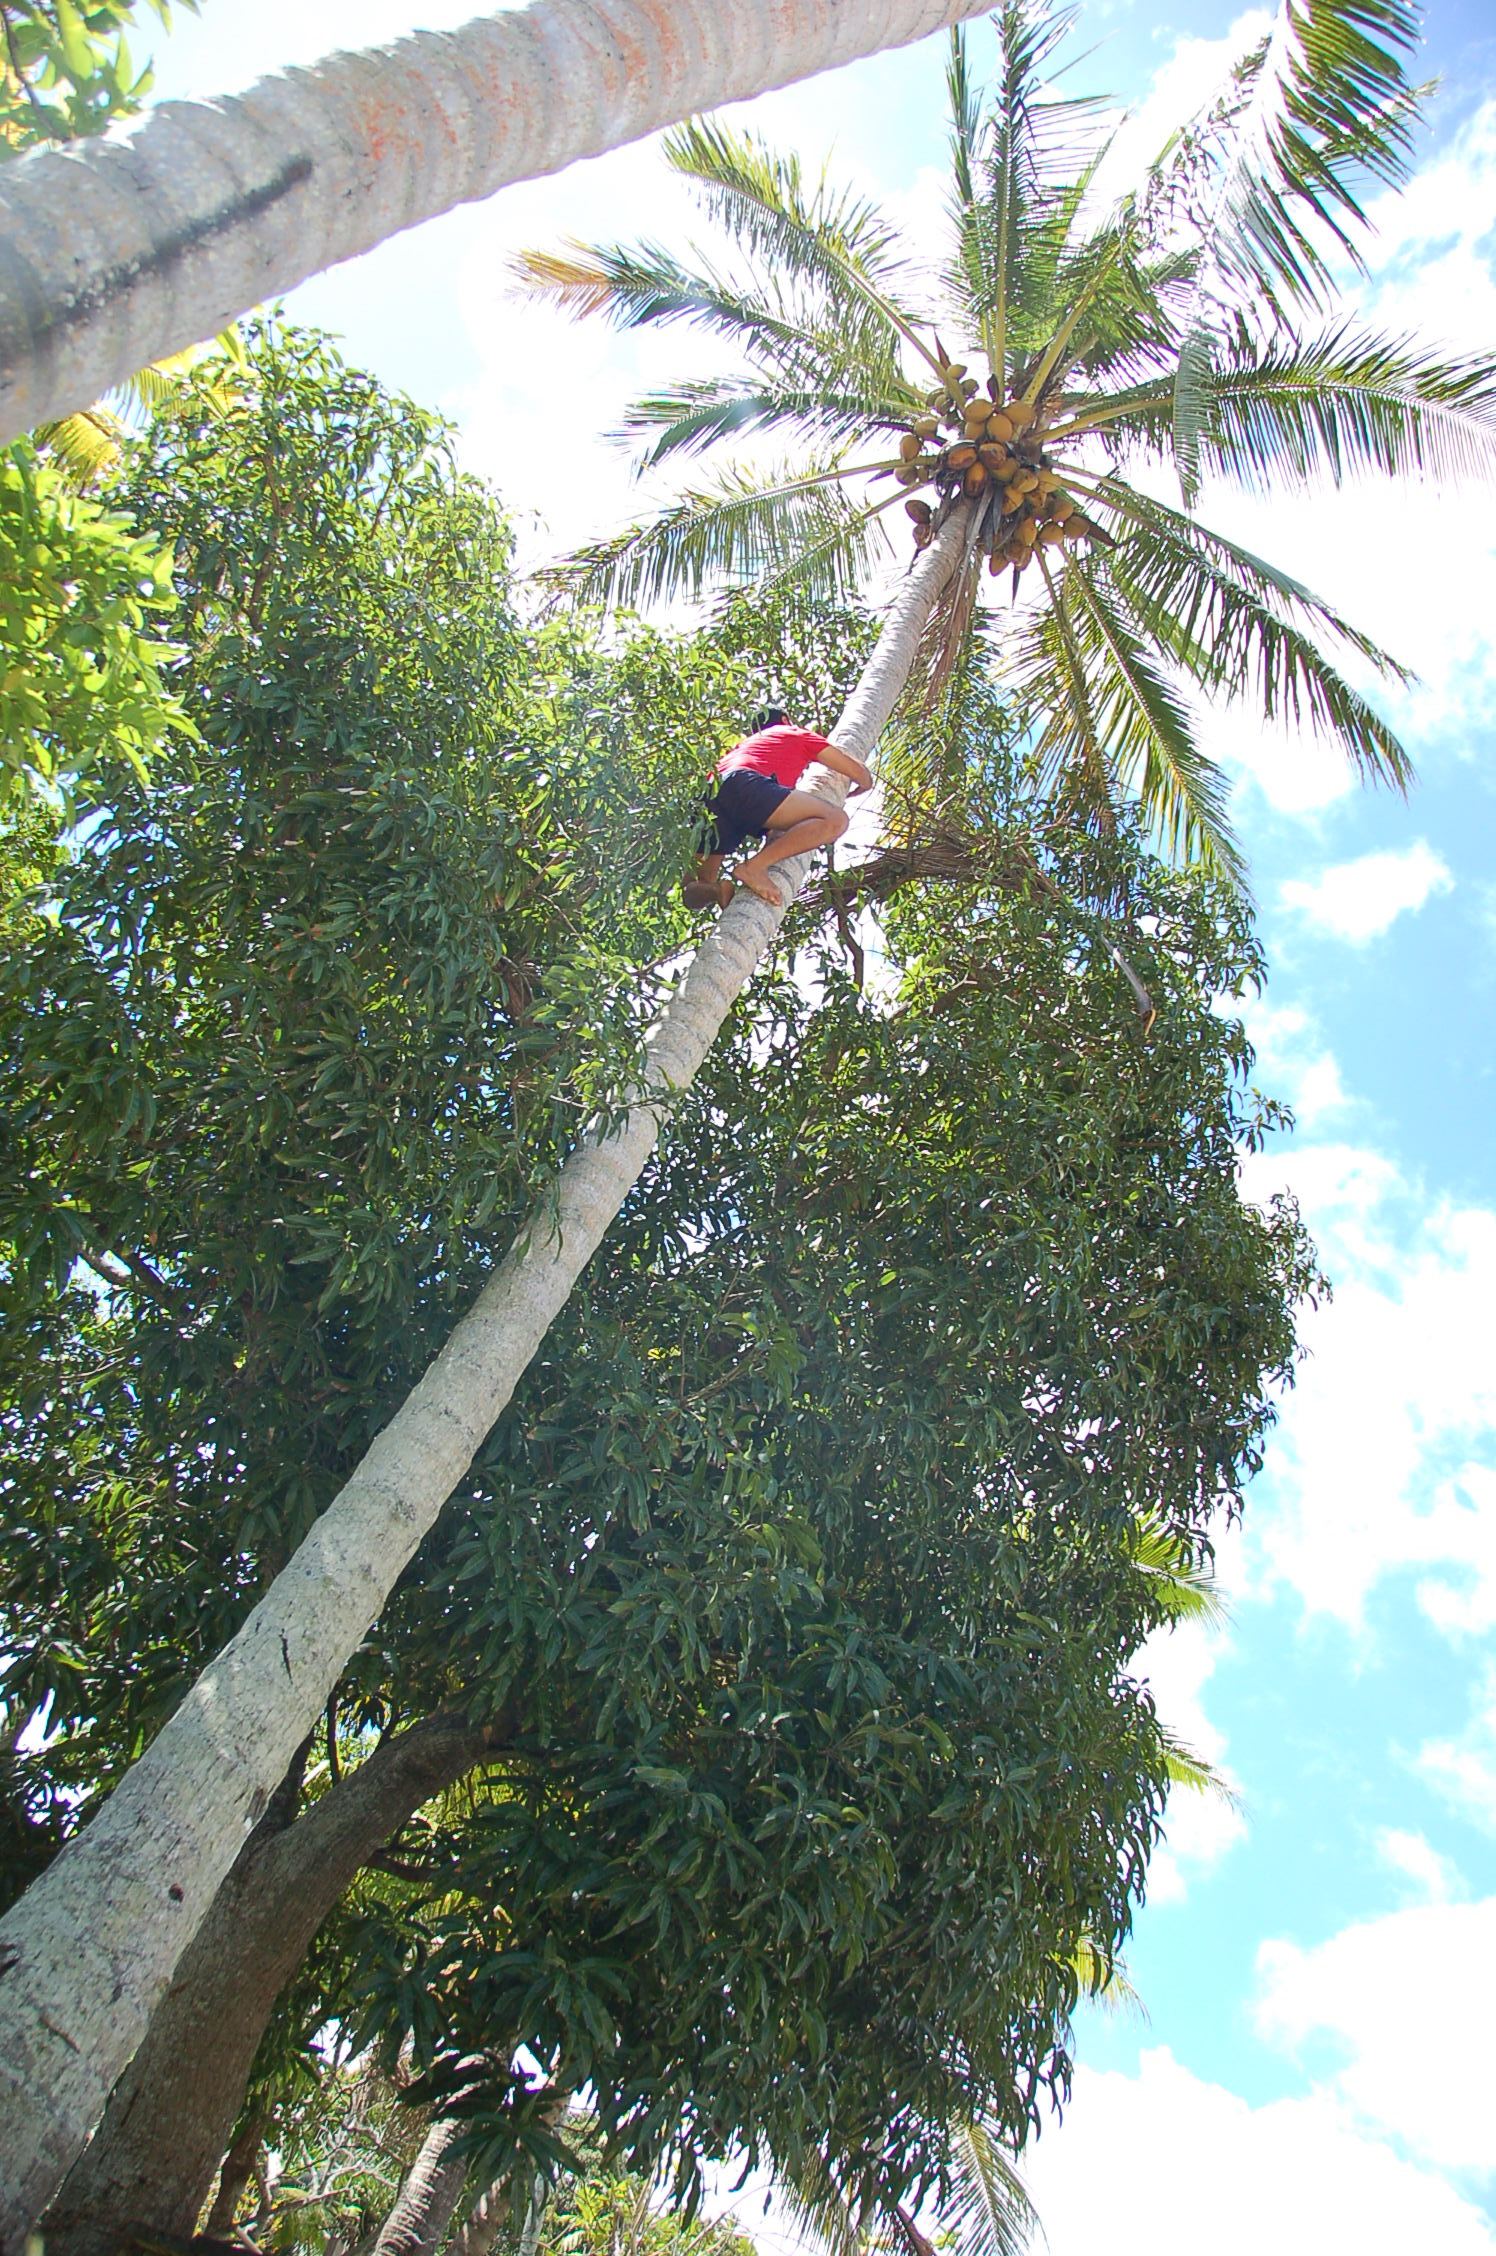 How to Climb a Coconut Tree - Tonga Time